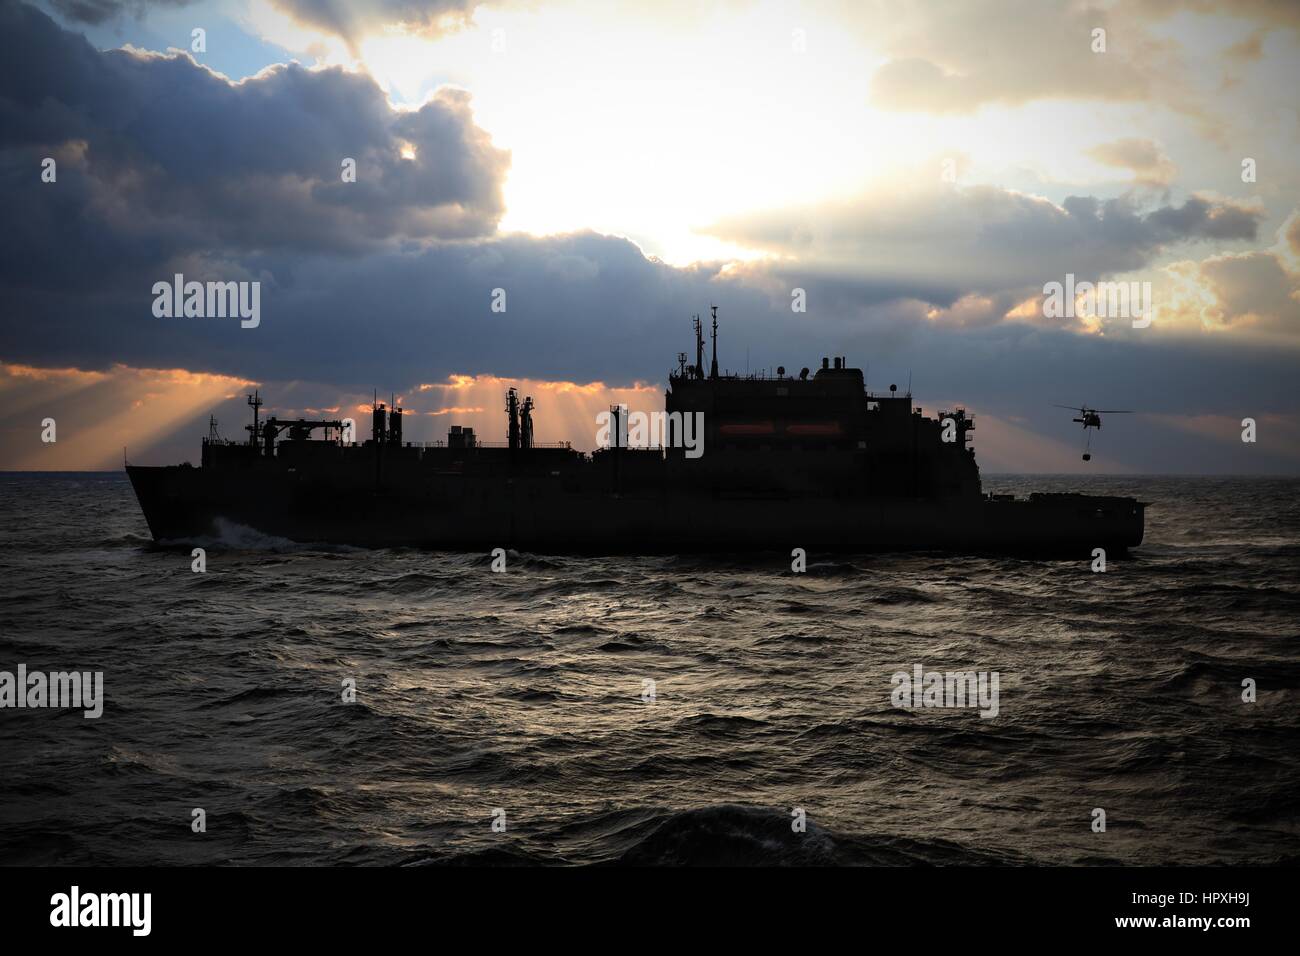 El transporte marítimo de carga seca de comandos militares y municiones buque USNS Robert E. Peary realiza una reposición en el mar con el buque de asalto anfibio USS Kearsarge, 18 de enero de 2013. Imagen cortesía de Hunter S. Harwell/US Navy. Foto de stock